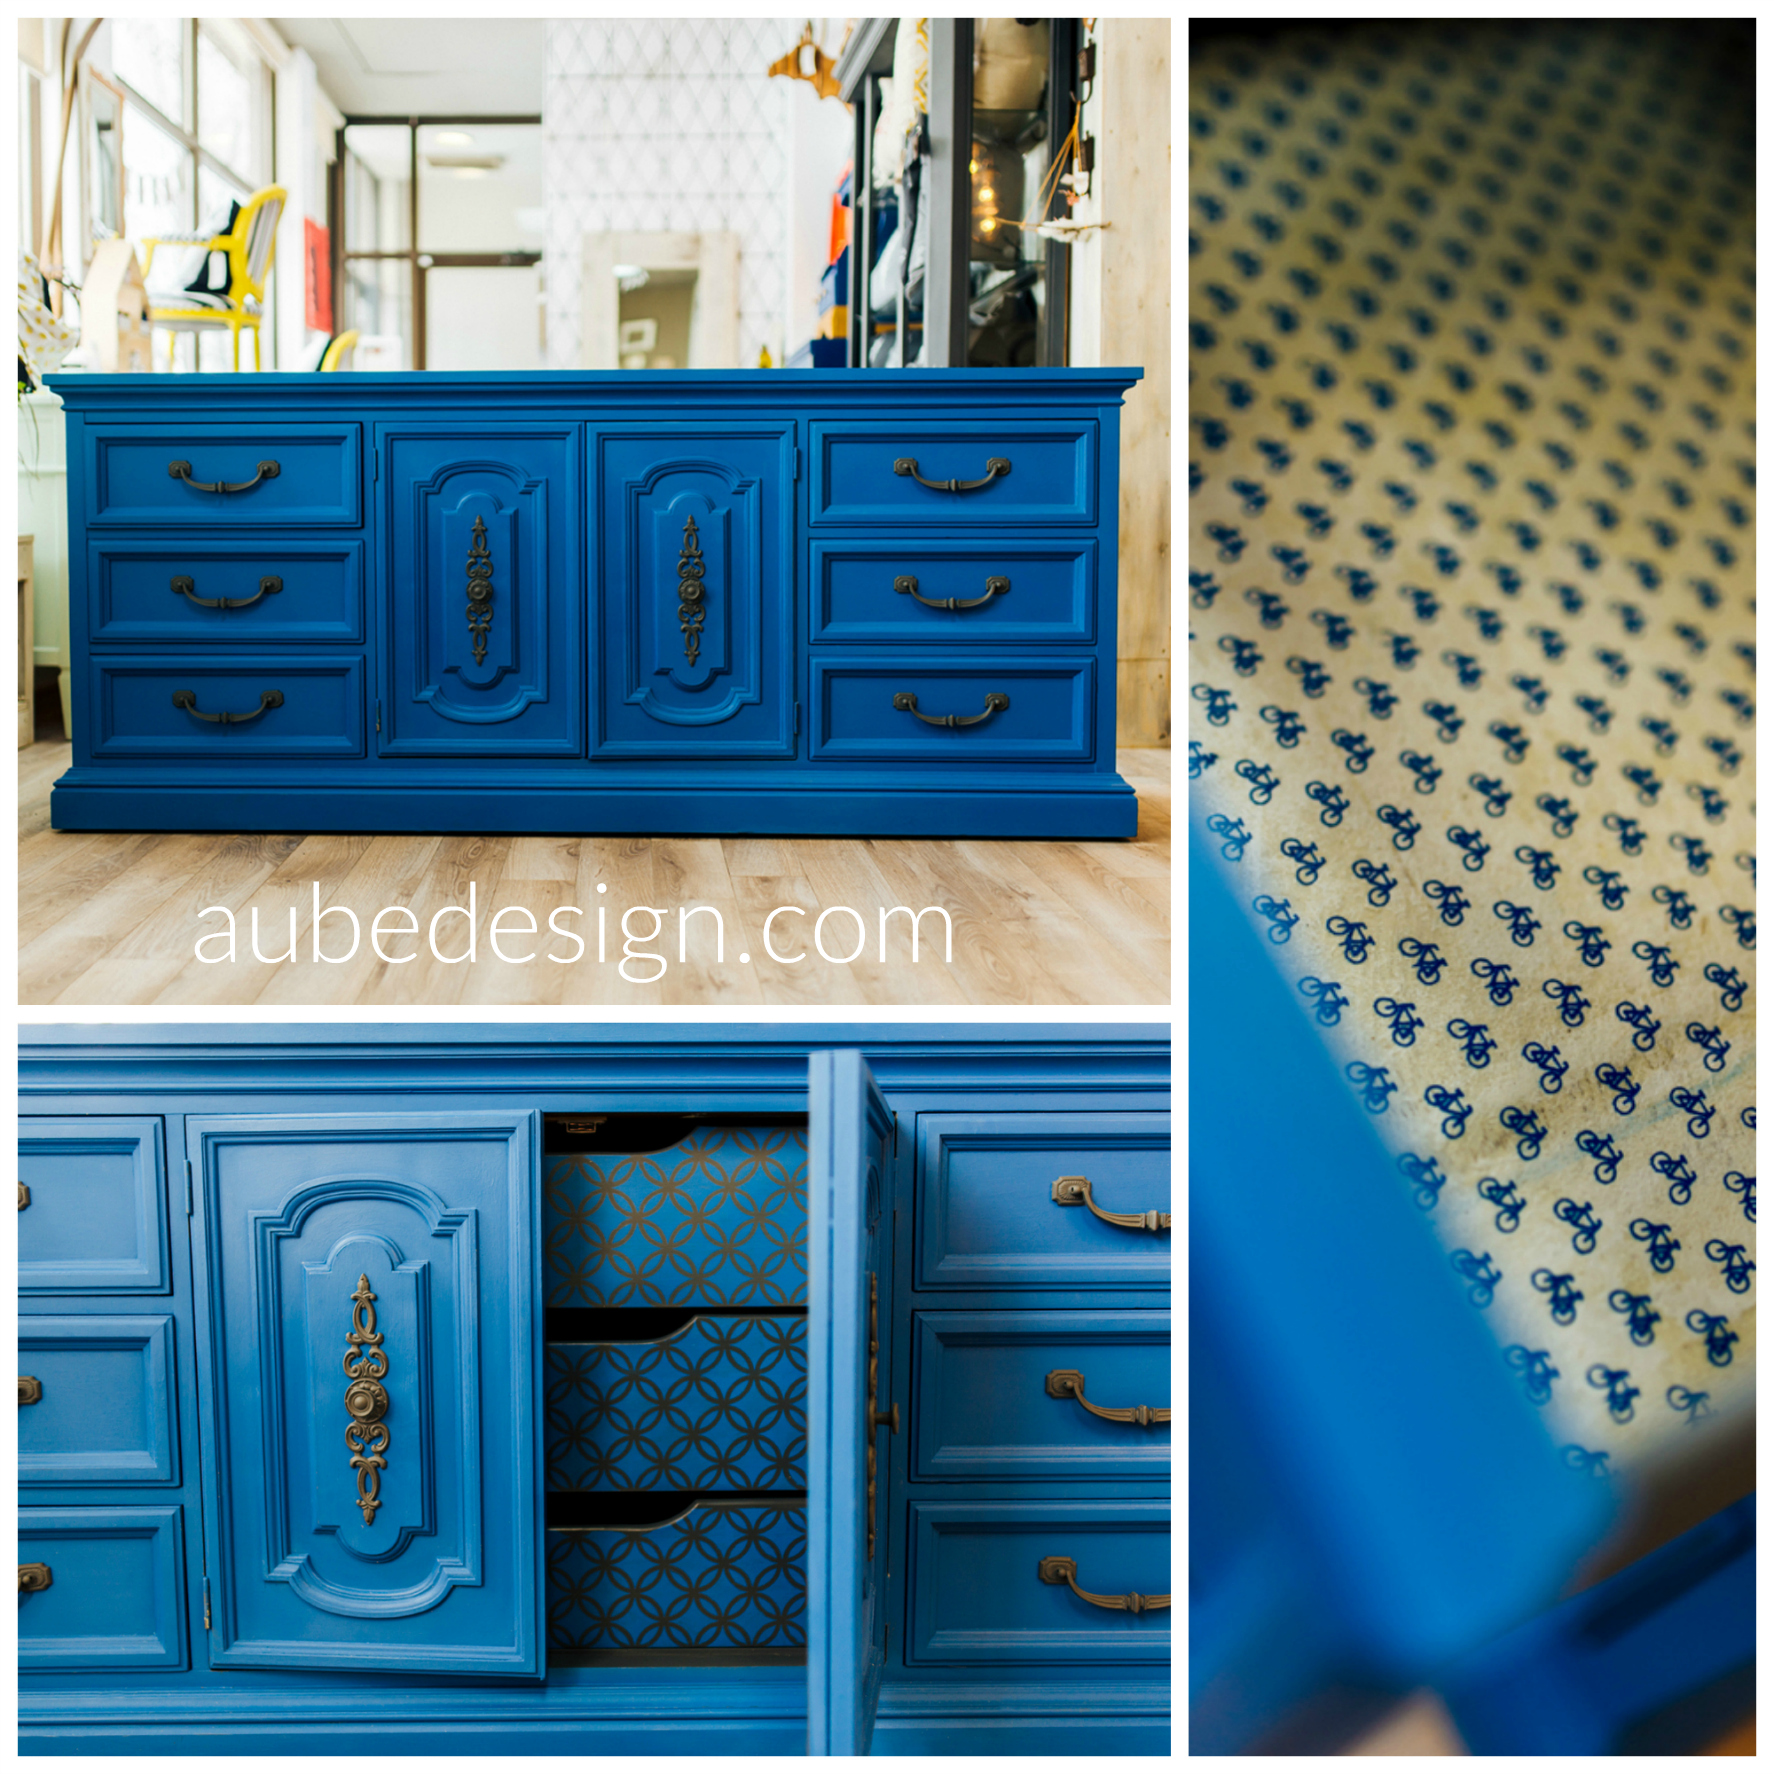 Collection Aube Design - Chalk paint - Napoléonic blue + Greek blue. Créations personnalisée pour meuble à langer bébé. Crédit photo : Marie-éve Rompré